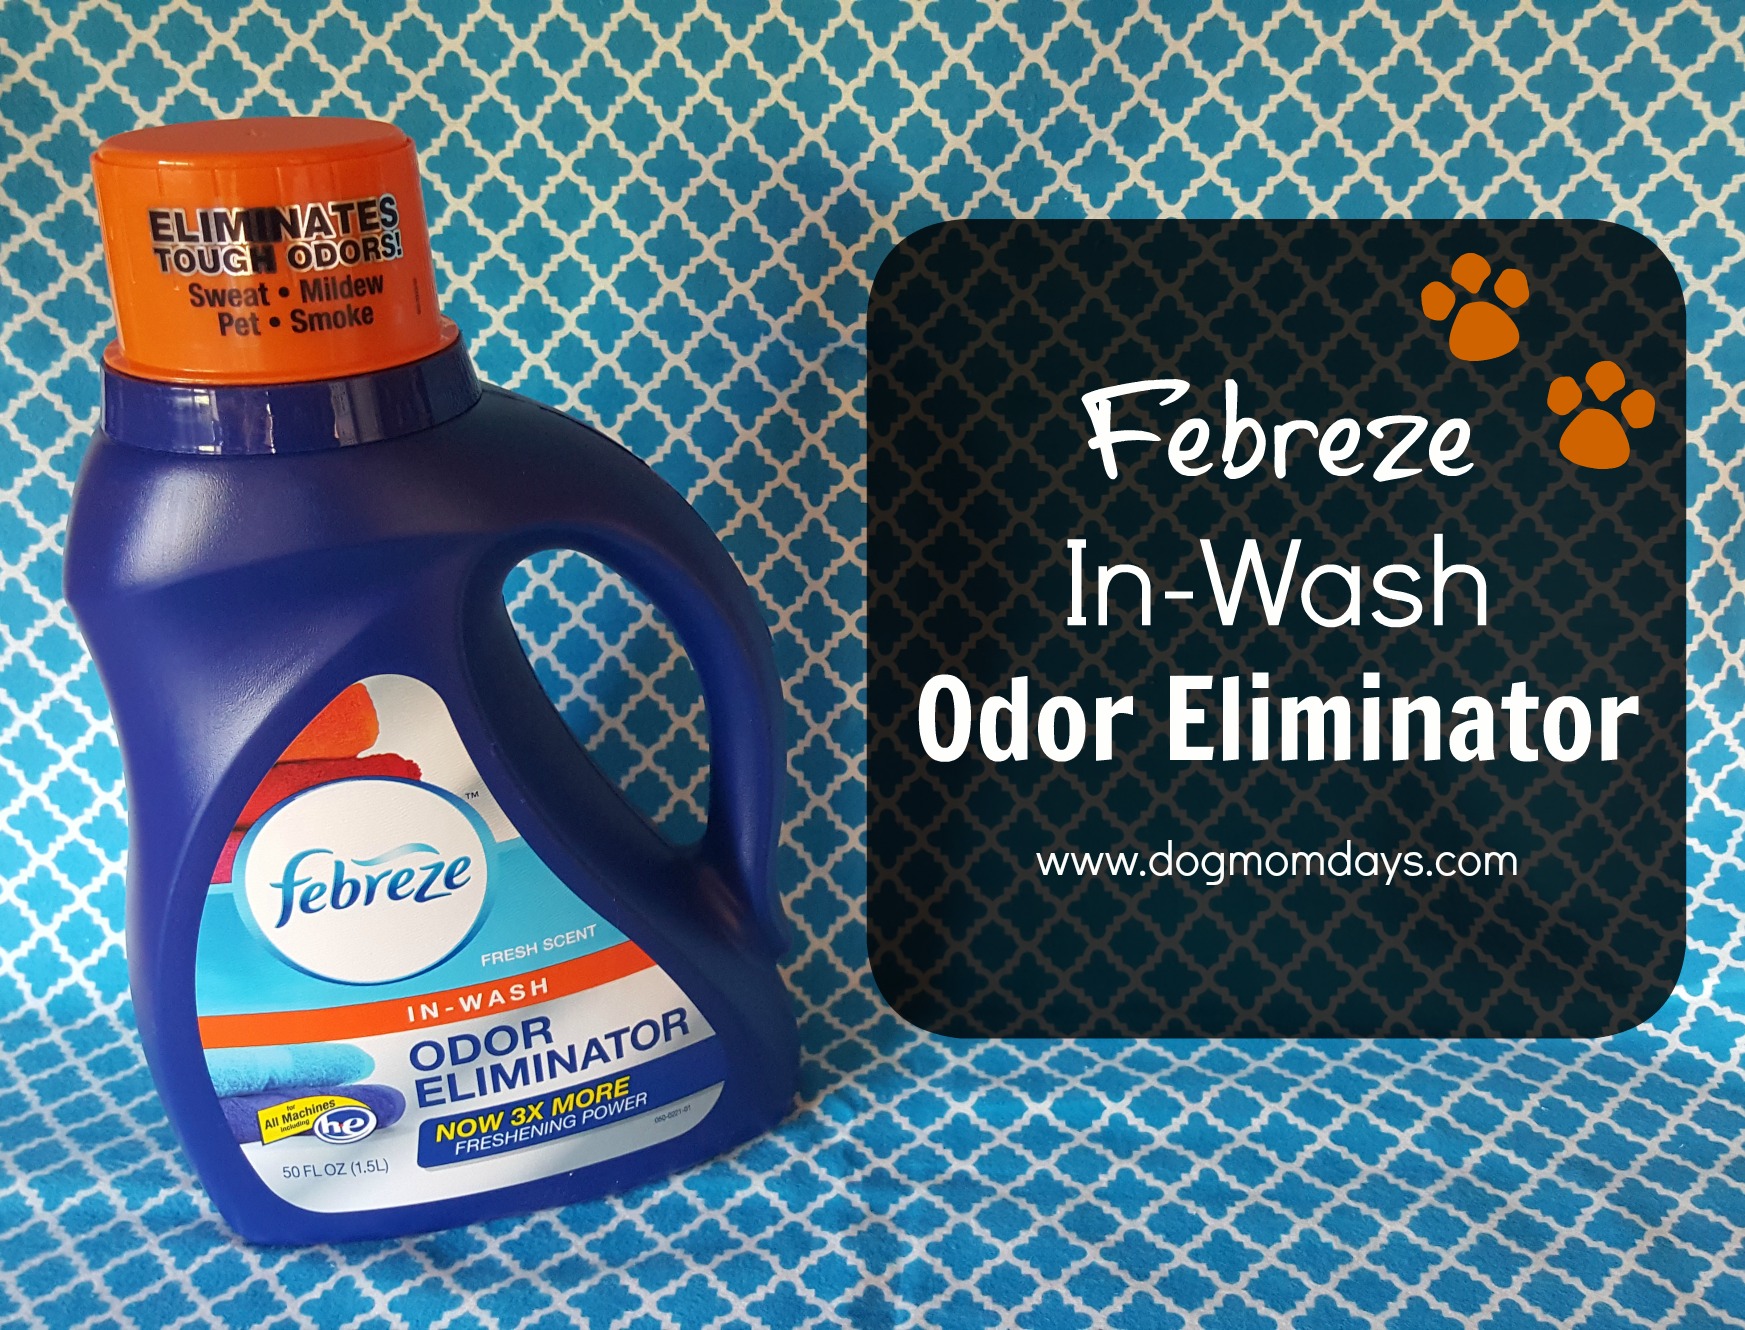 Febreze In-Wash Odor Eliminator